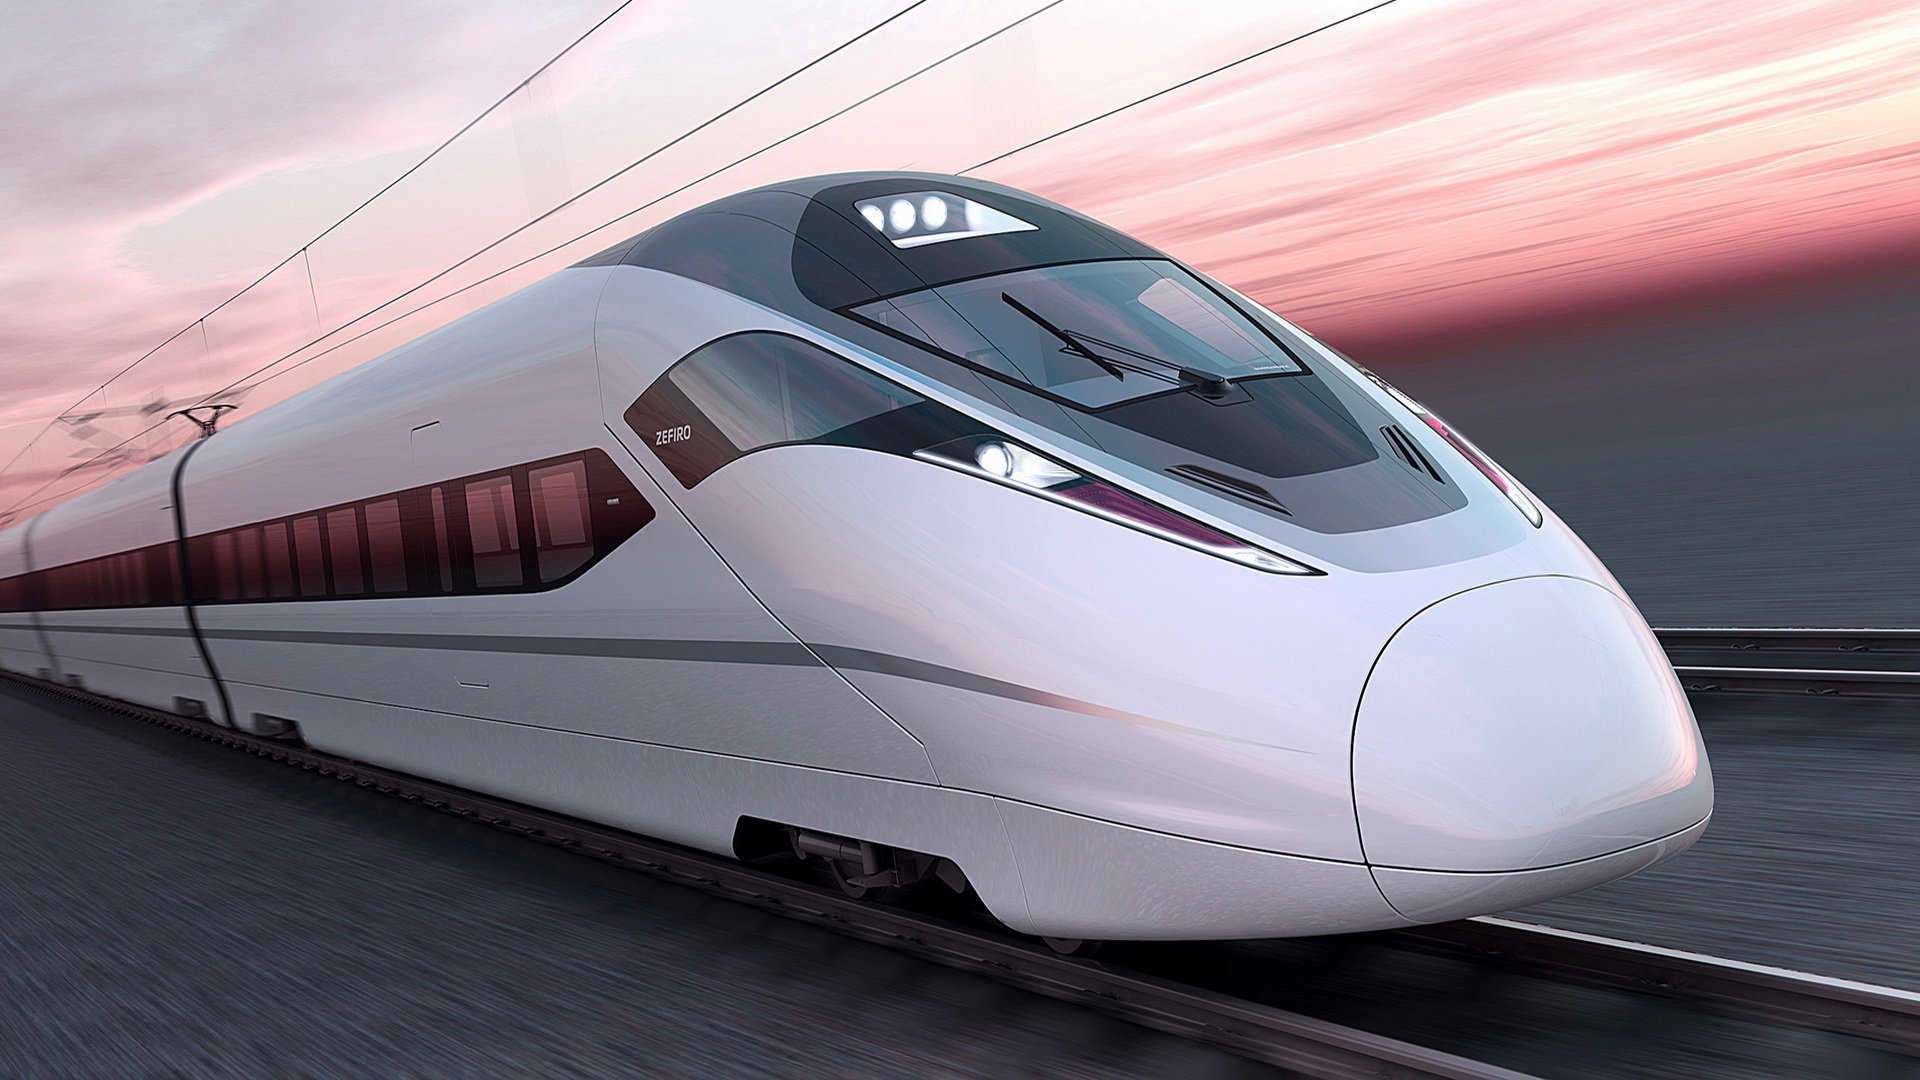 搬动一次地球！中国高铁发送旅客超70亿人次-高铁,动车组,复兴号 ——快科技(驱动之家旗下媒体)--科技改变未来